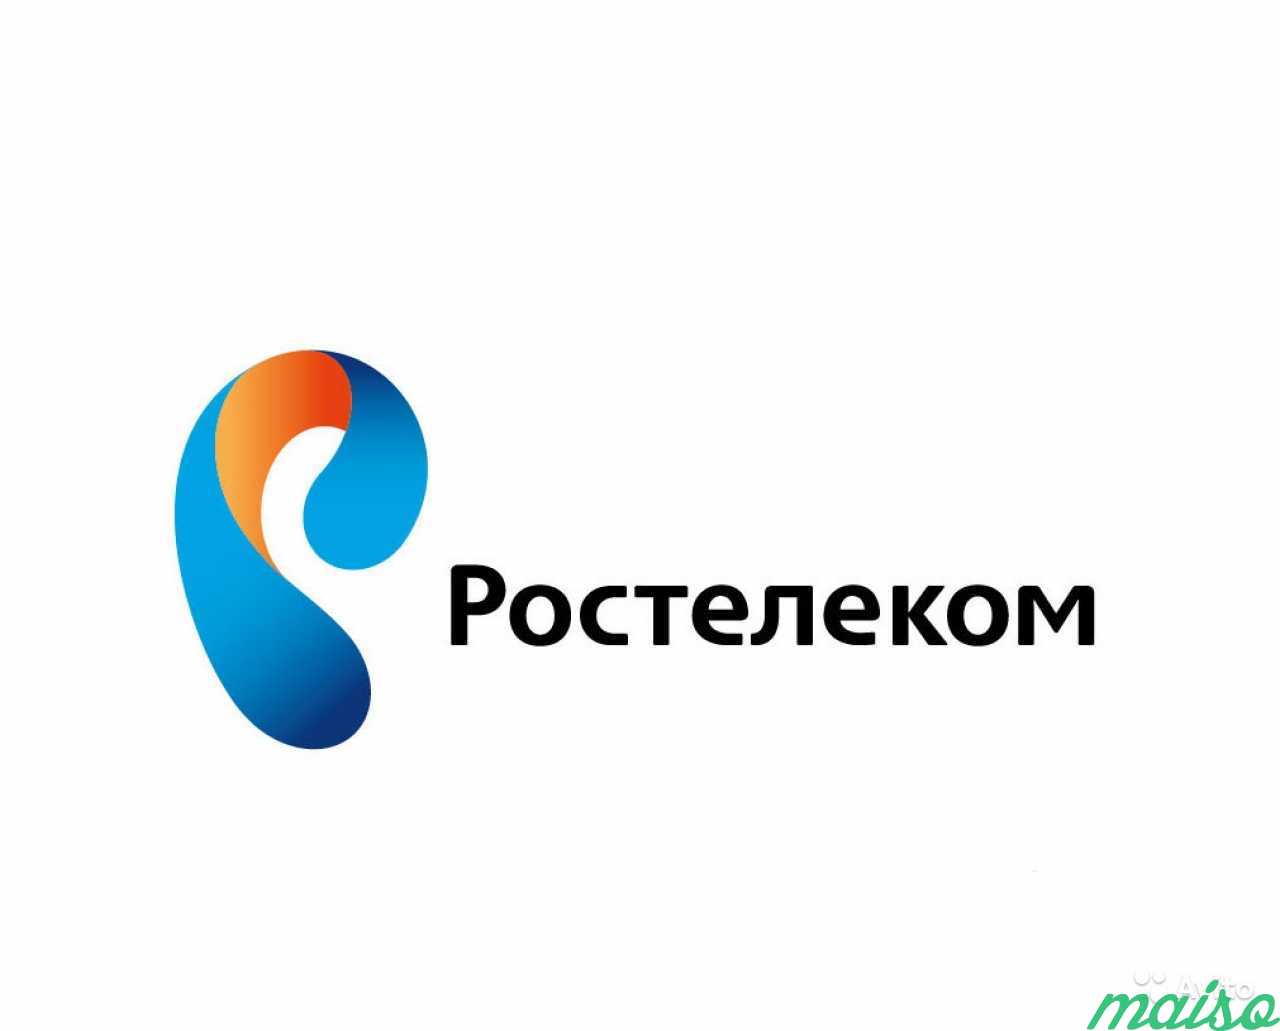 Создание Разработка Дизайн логотипа Стиль бренд в Санкт-Петербурге. Фото 1